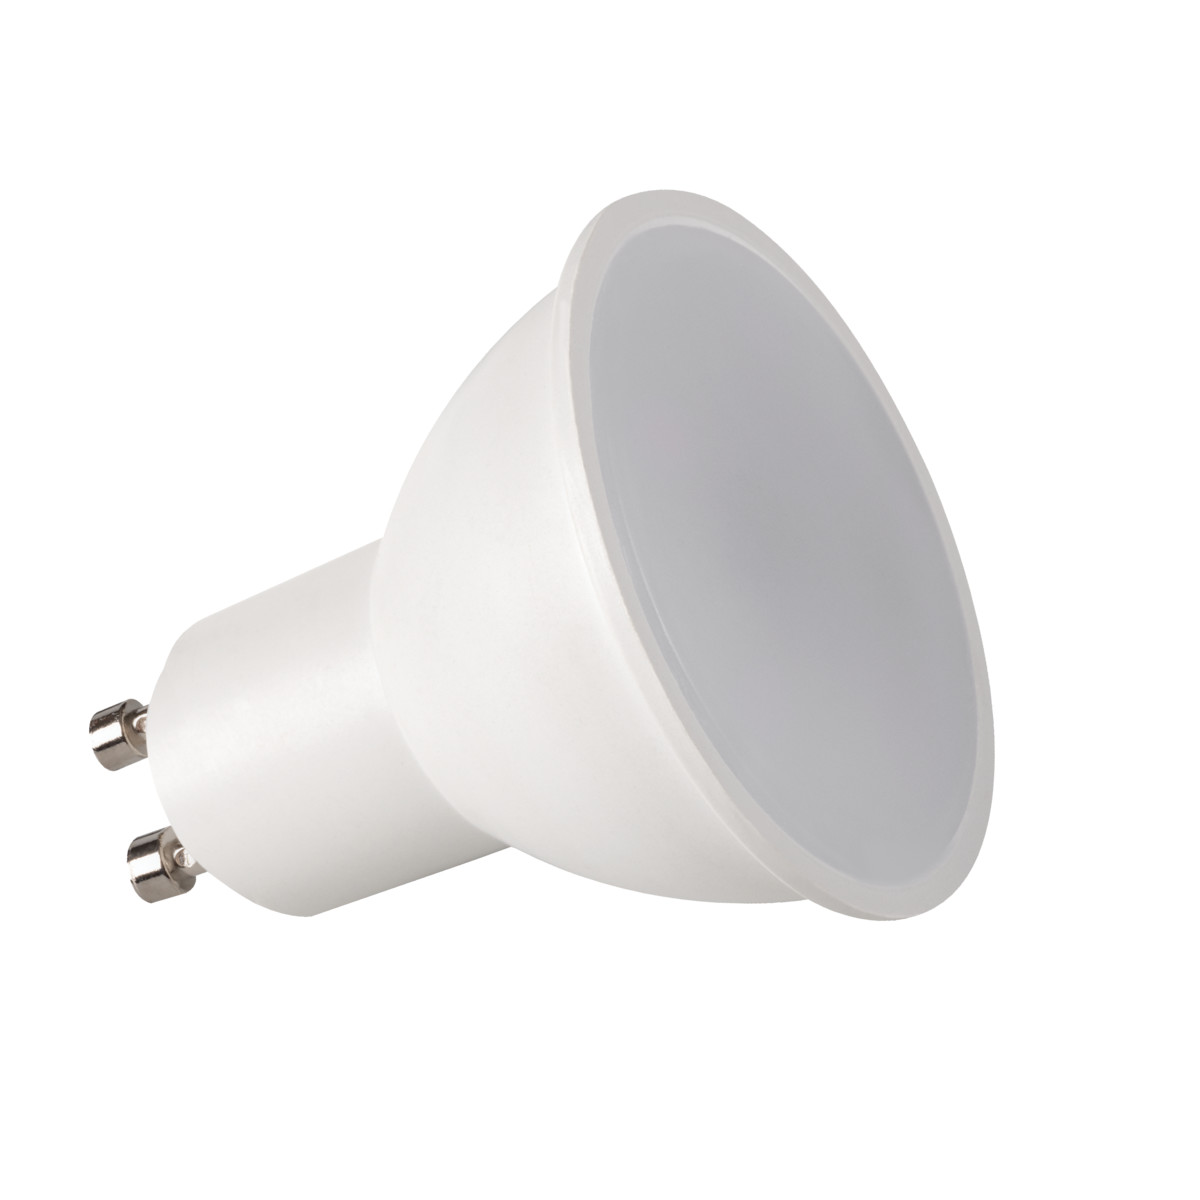 10x Kanlux IQ LED GU10 Dimmable Light Bulb 6500K Daylight White Lamp 7.5W 